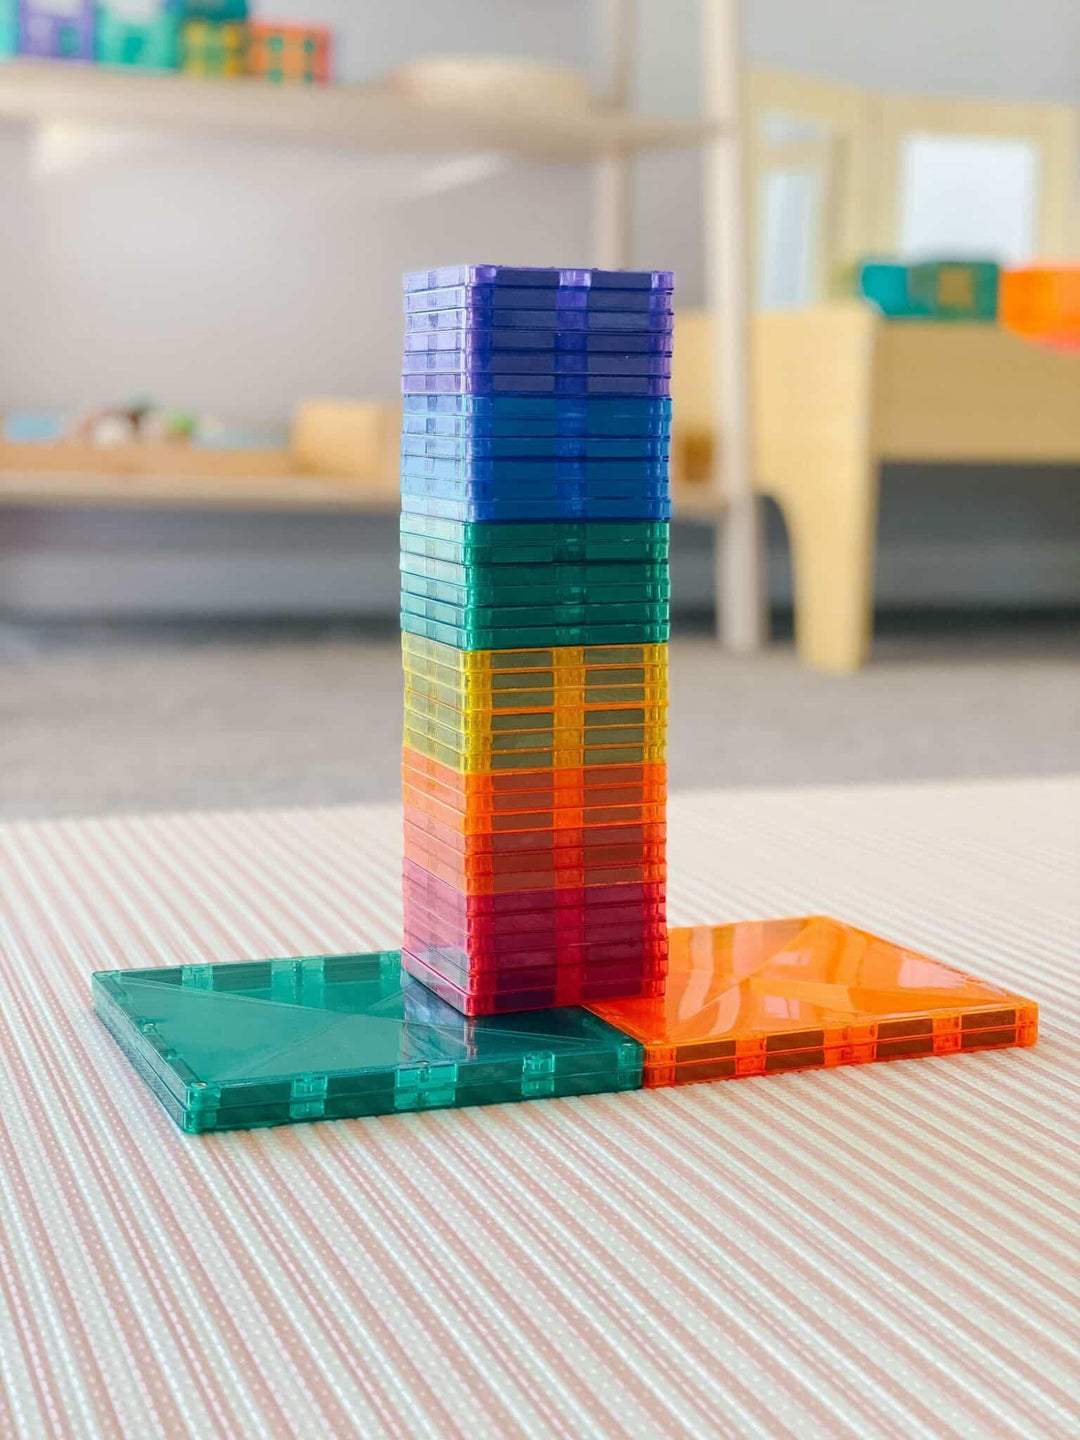 Connetix Tiles Connetix Tiles Rainbow 40 Piece Square Pack